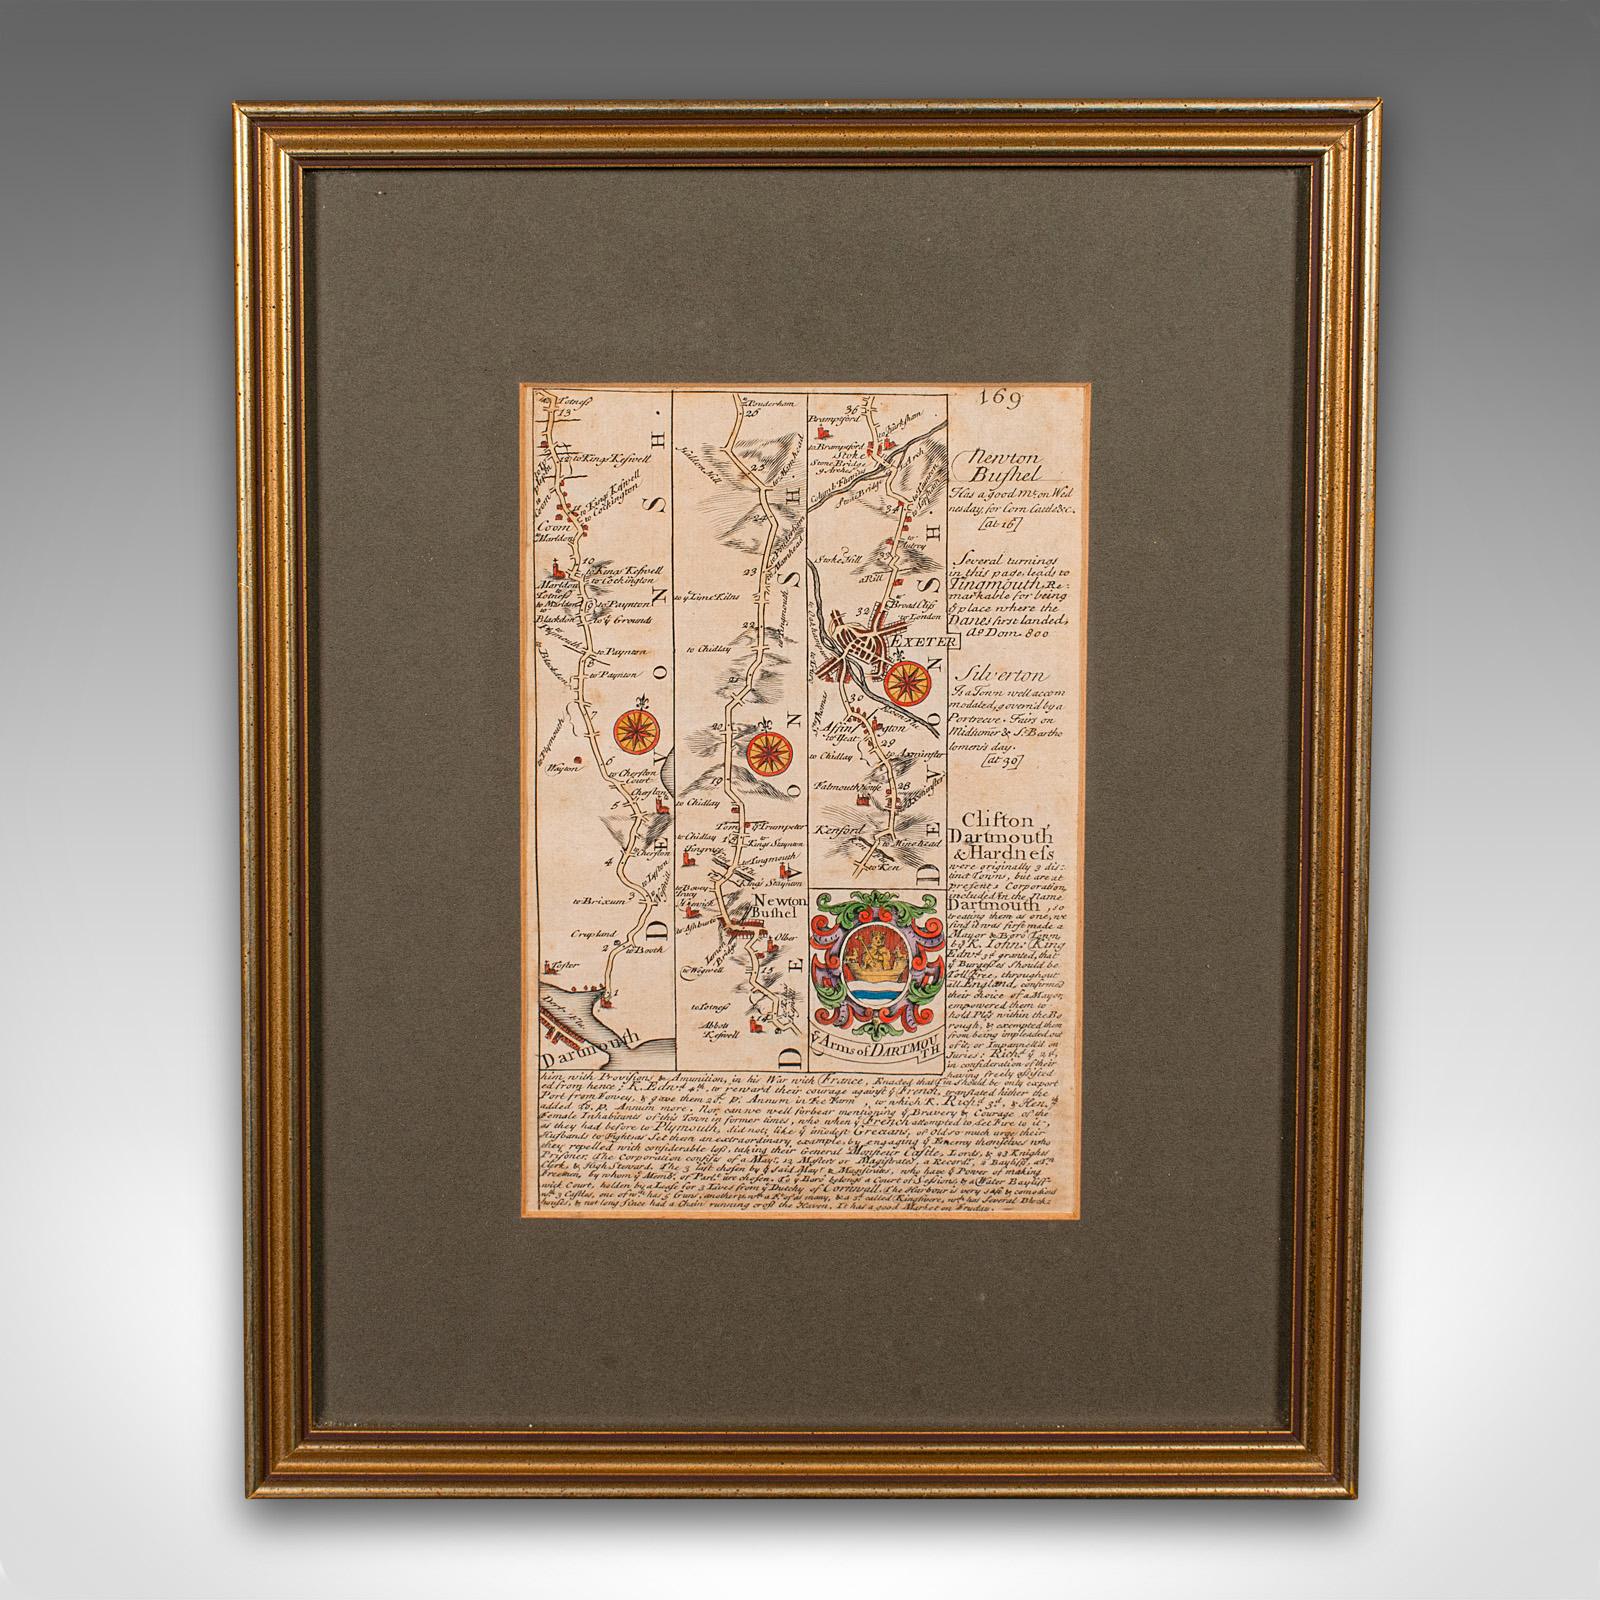 Dies ist eine antike Straßenkarte von South Devon. Eine englische, gerahmte Lithografie von regionalem Interesse aus dem frühen 18. Jahrhundert oder später.

Hervorragende Straßenkartografie des frühen 18. Jahrhunderts von Dartmouth nach